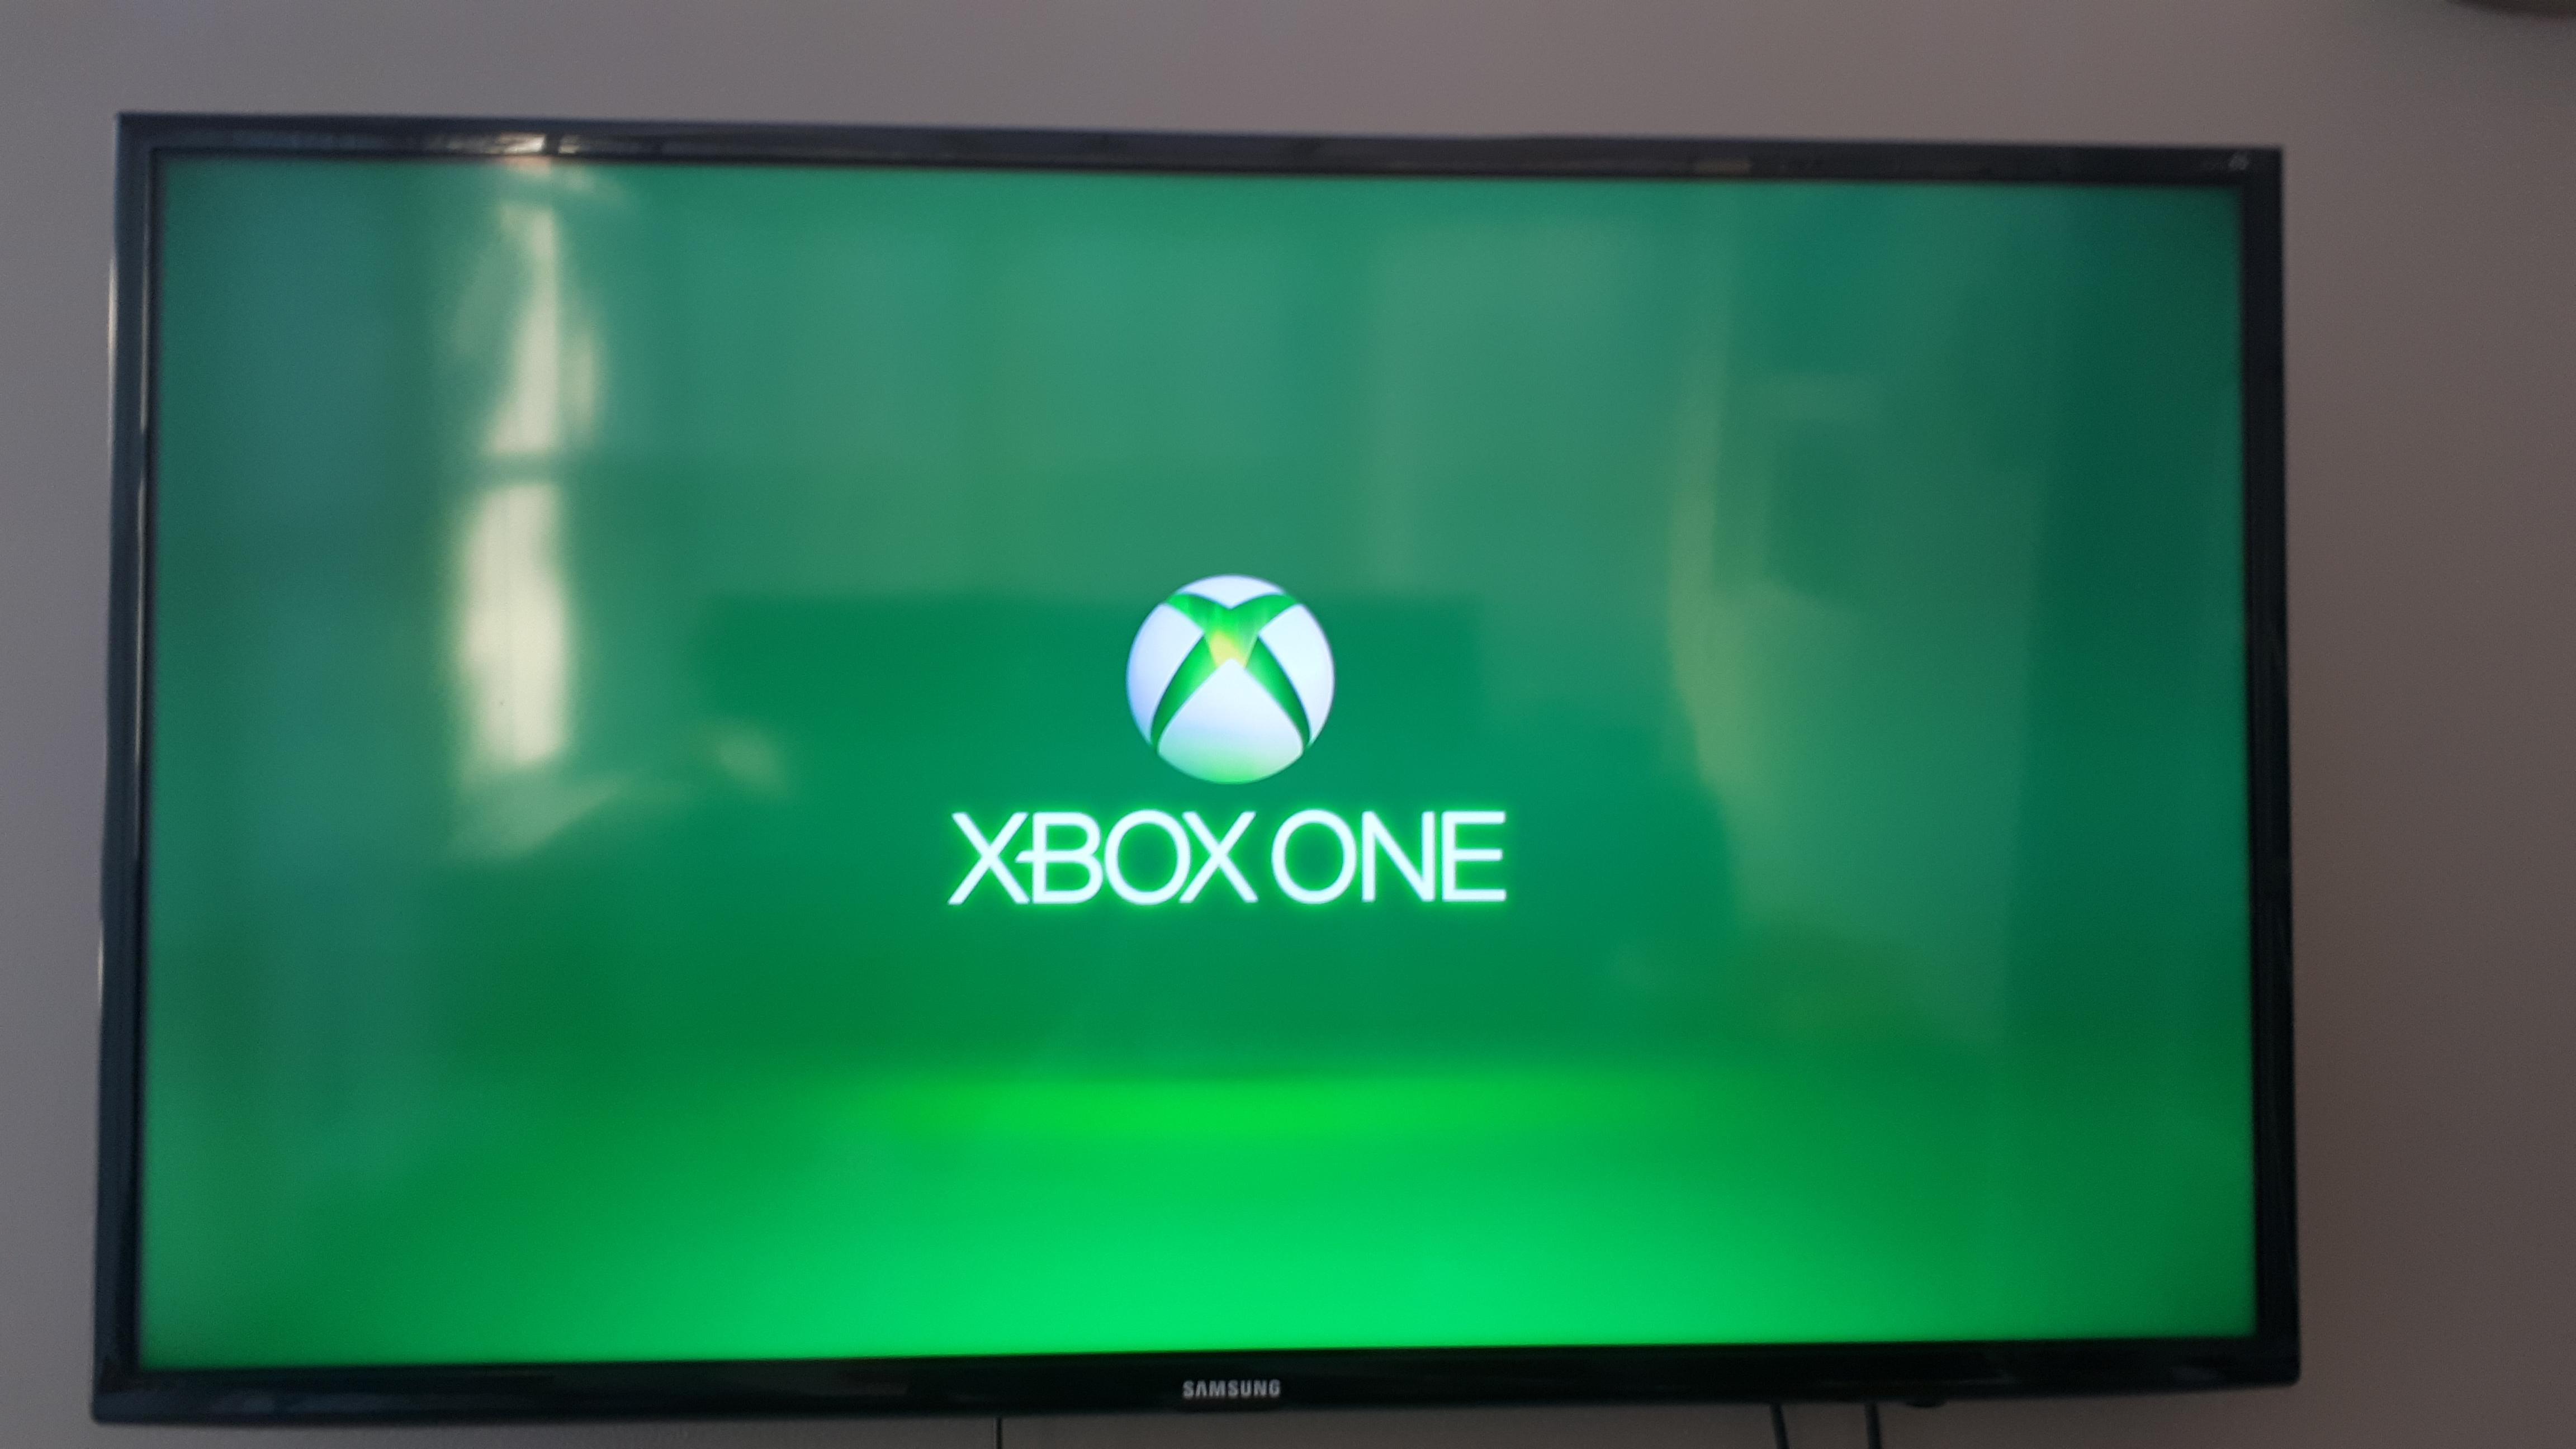 Xbox Stuck on Green Screen